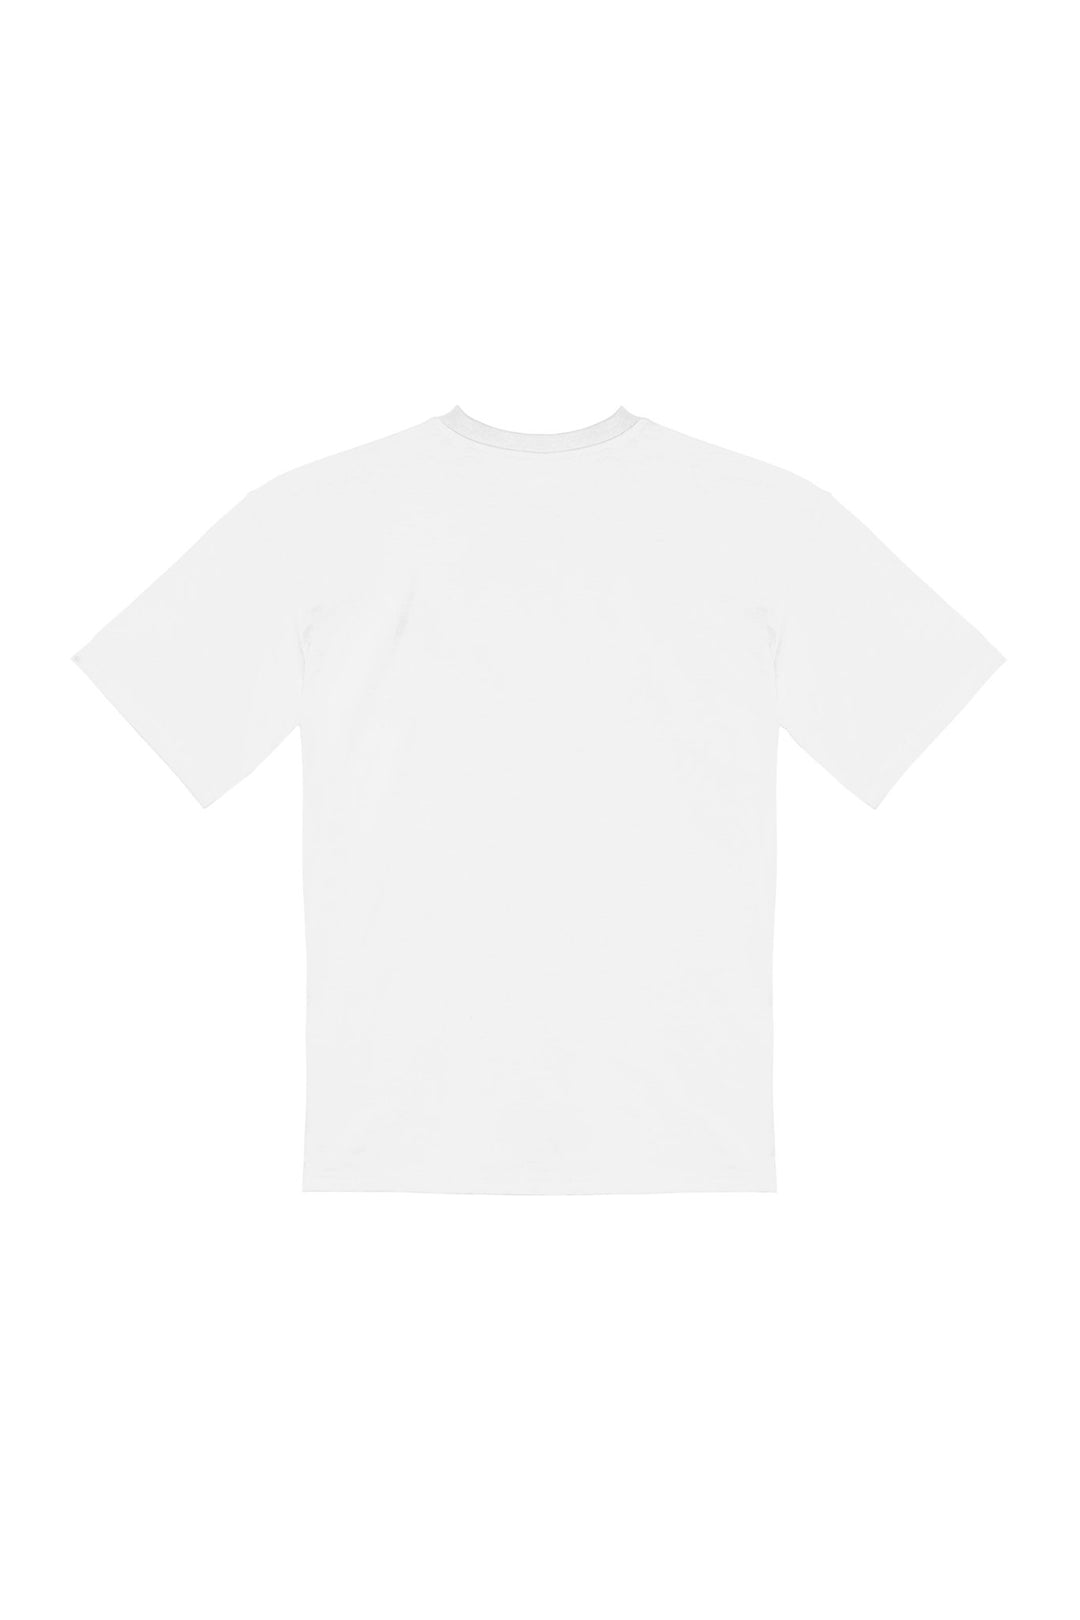 BAMBOCHE・T-shirt unisexe・Blanc - Le Cartel